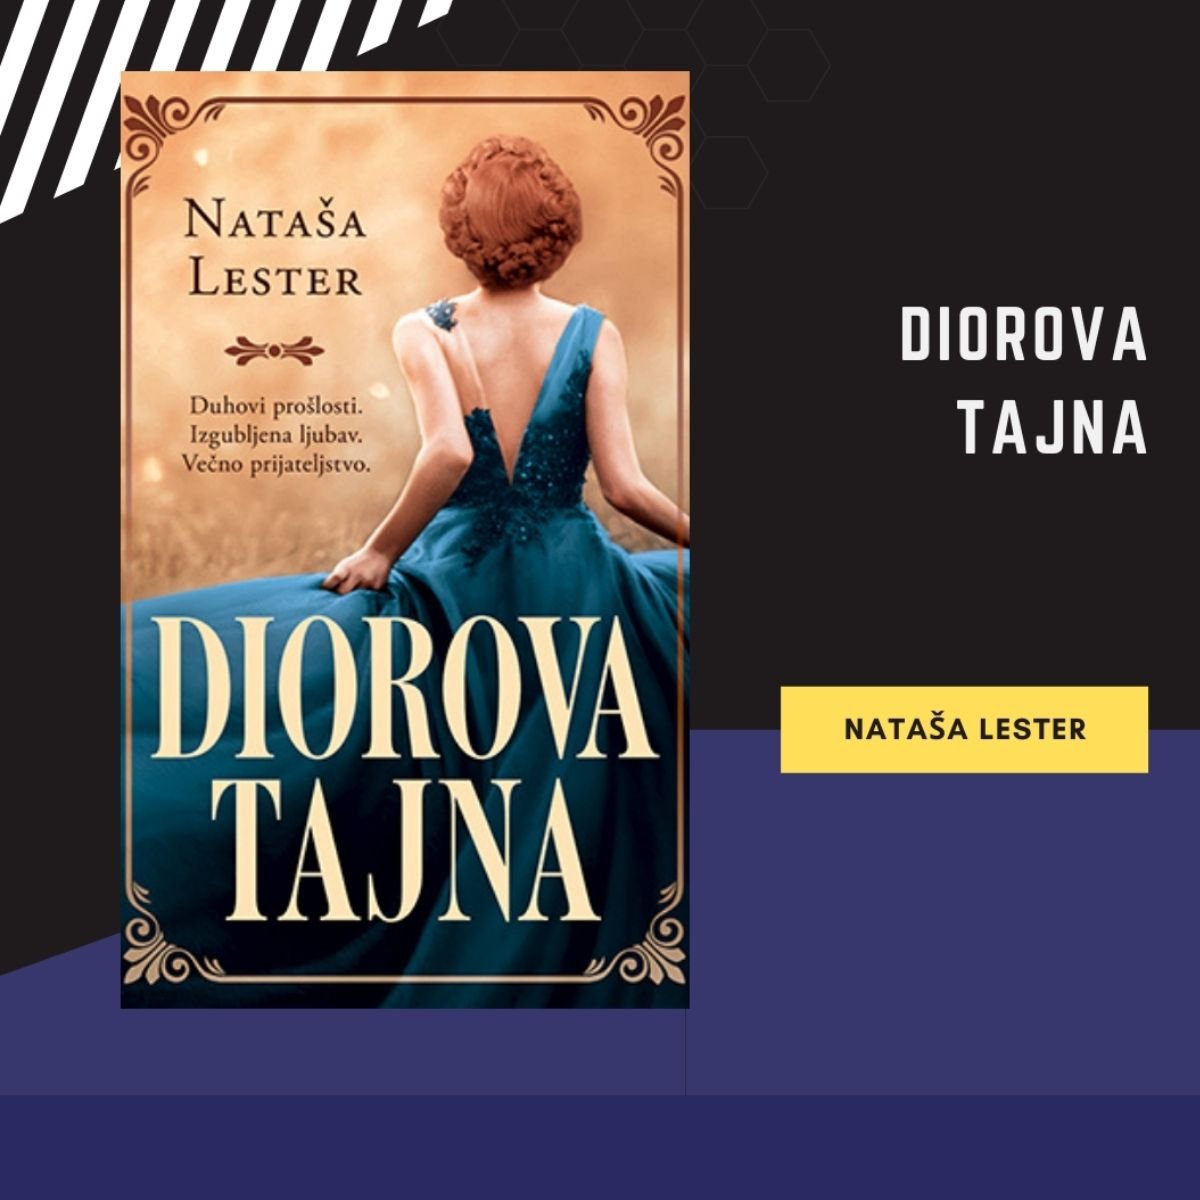 Naslovna strana romana Diorova tajna / autor fotografije: Milica Stojiljković